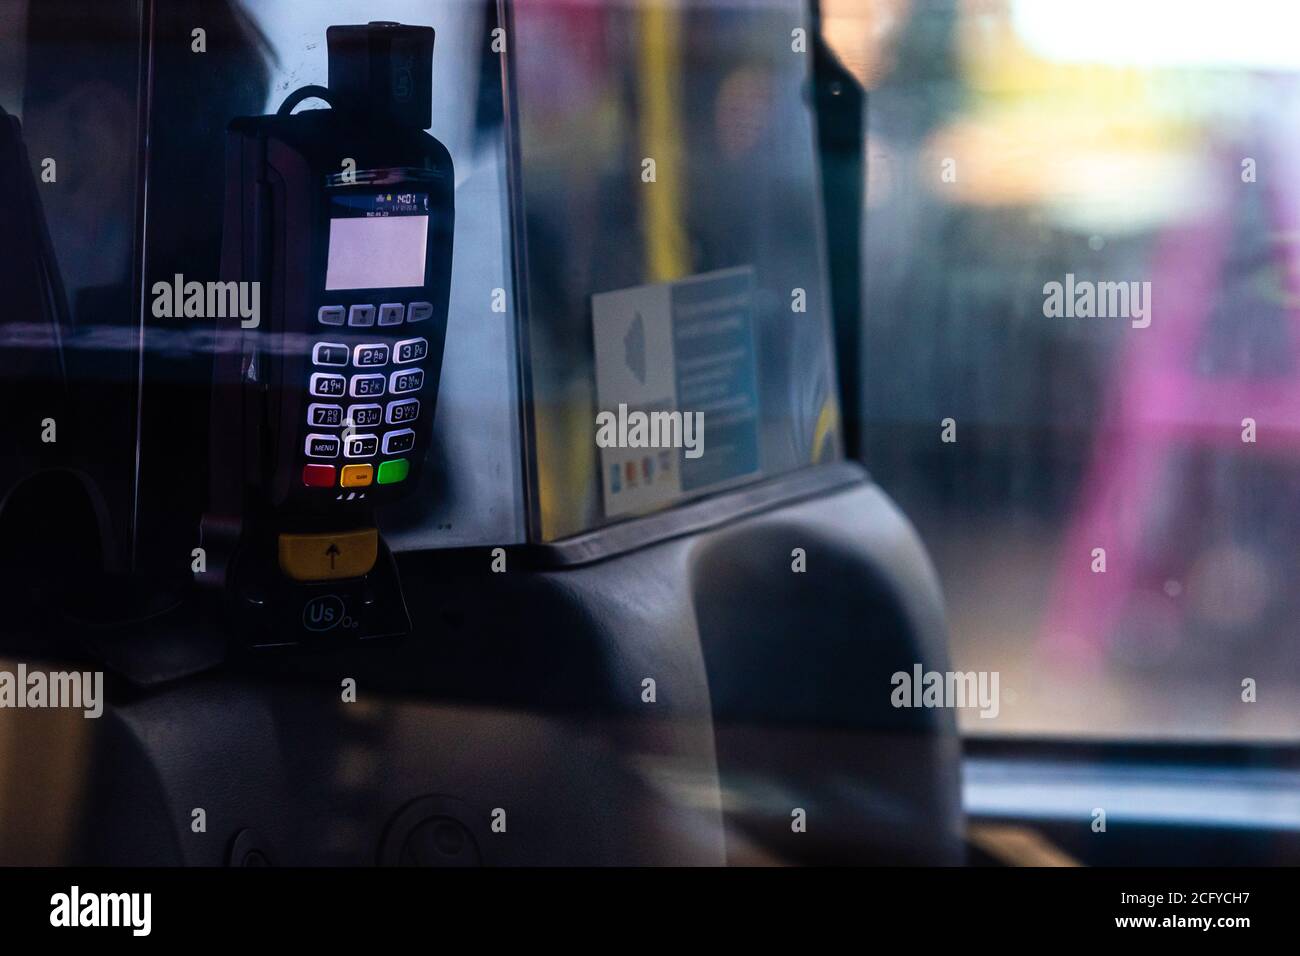 Londres, Angleterre, Royaume Uni - 31 décembre 2019 : une vue abstraite par le biais d'un taxi à un terminal de paiement bancaire pour un taxi Londres débarrasser - image Banque D'Images